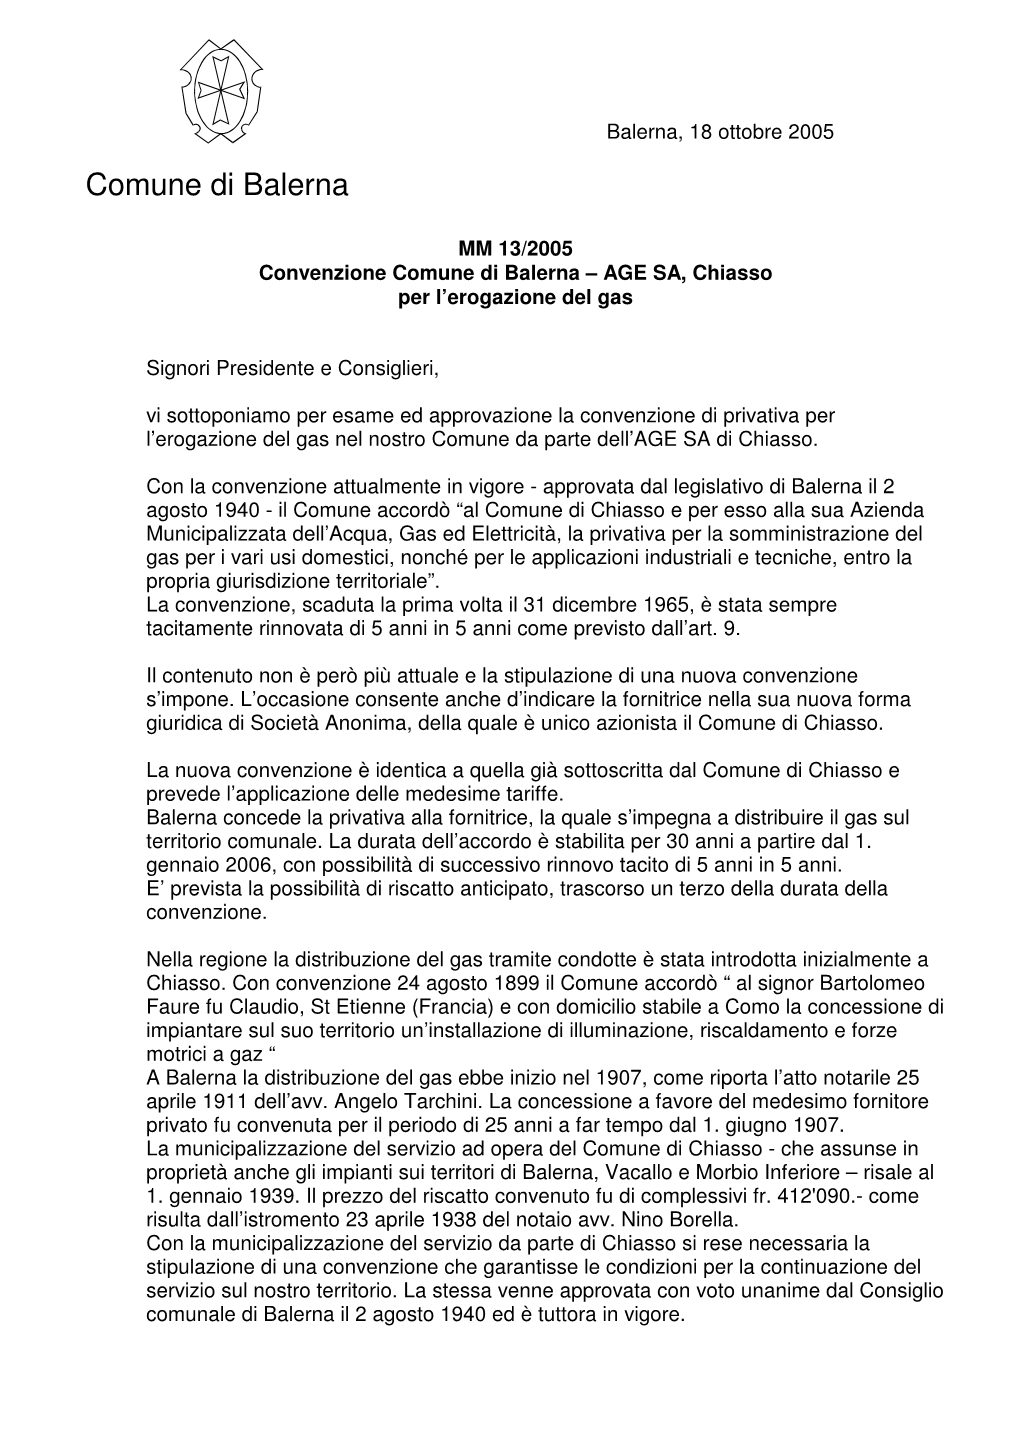 MM 13/2005 Convenzione Comune Di Balerna – AGE SA, Chiasso Per L’Erogazione Del Gas